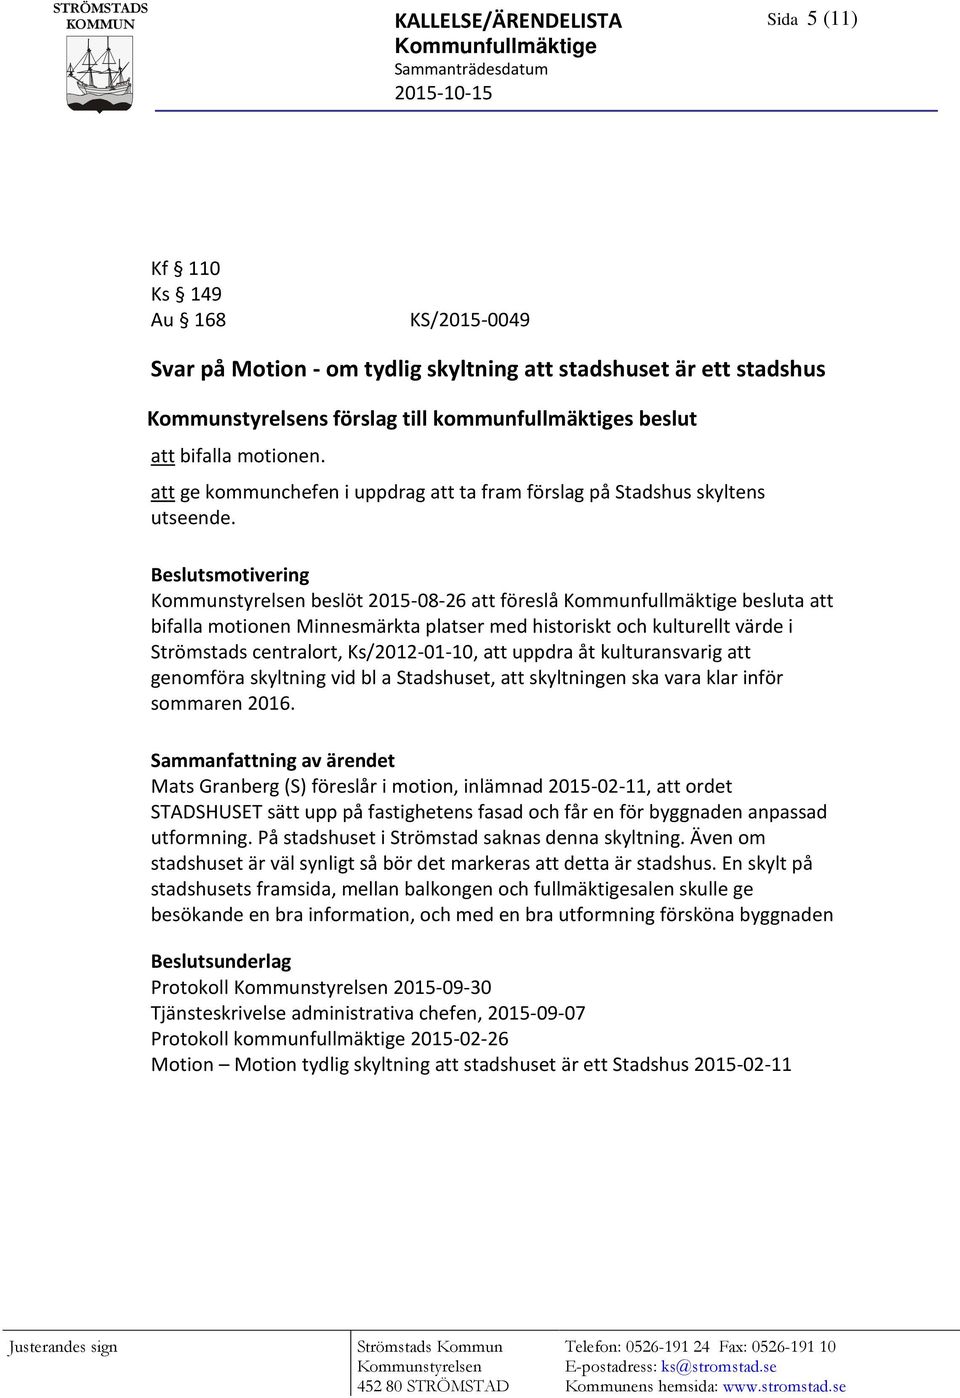 Beslutsmotivering beslöt 2015-08-26 att föreslå Kommunfullmäktige besluta att bifalla motionen Minnesmärkta platser med historiskt och kulturellt värde i Strömstads centralort, Ks/2012-01-10, att